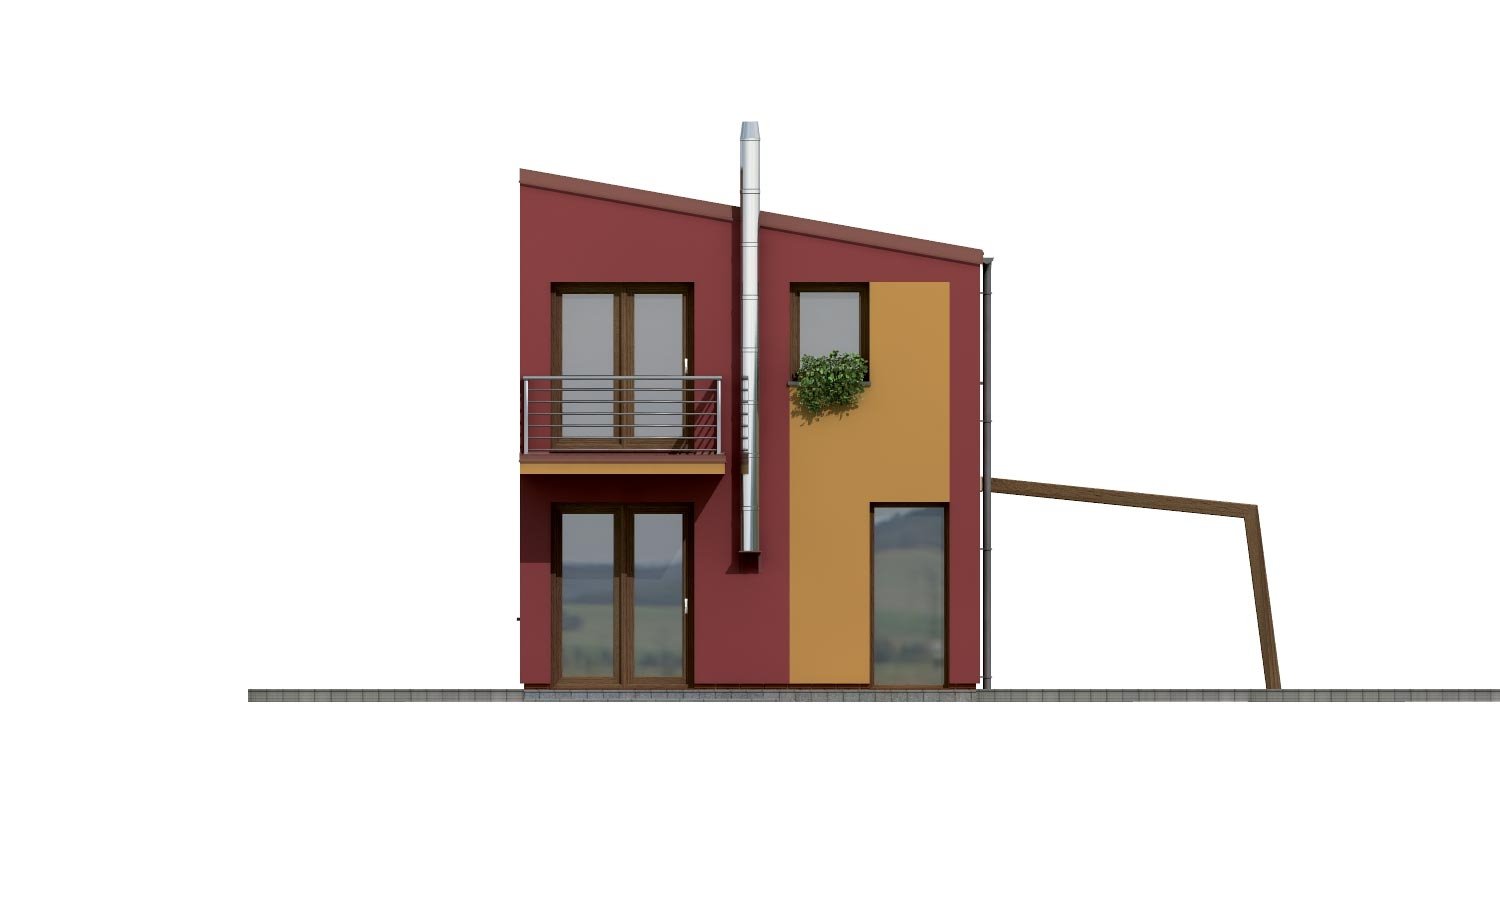 Zrkadlový pohľad 3. - Projekt moderního rodinného domu na úzký pozemek.